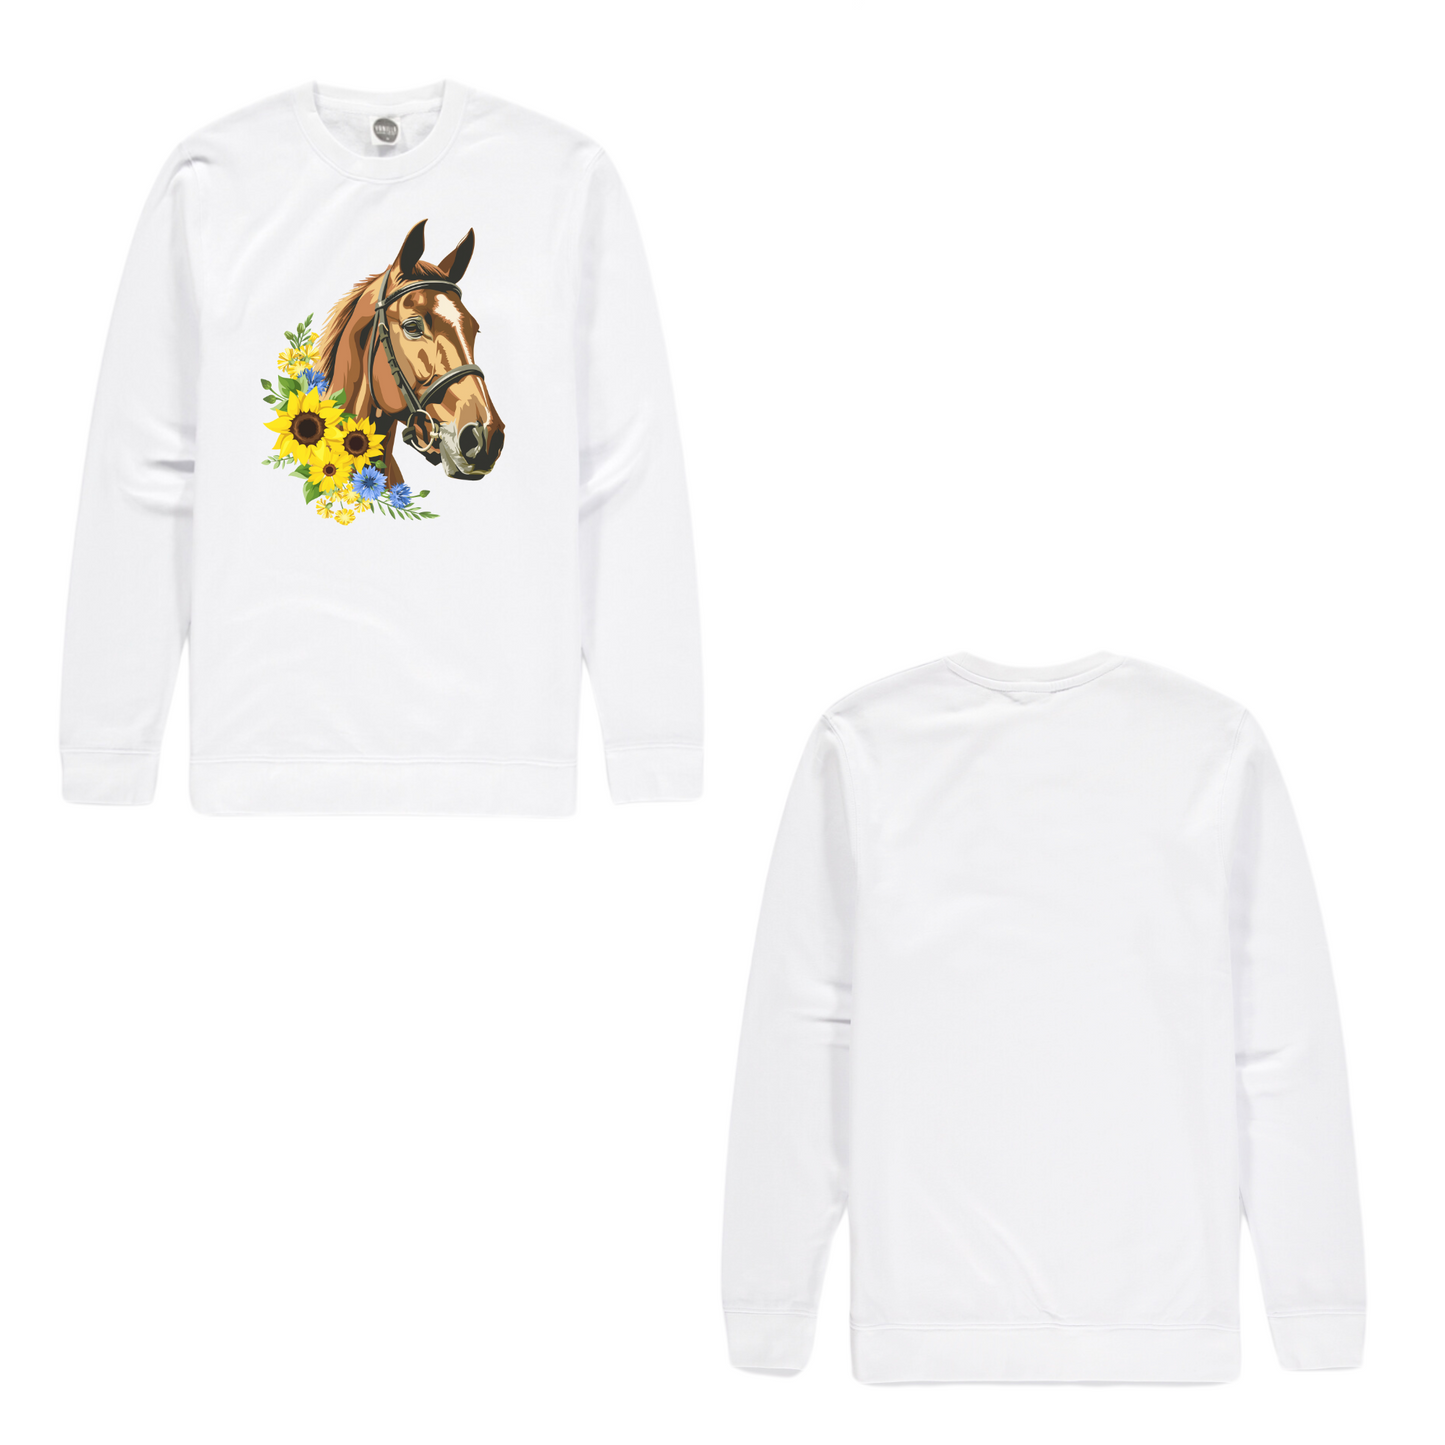 Horse & Sunflowers Women's Organic Cotton Sweatshirt